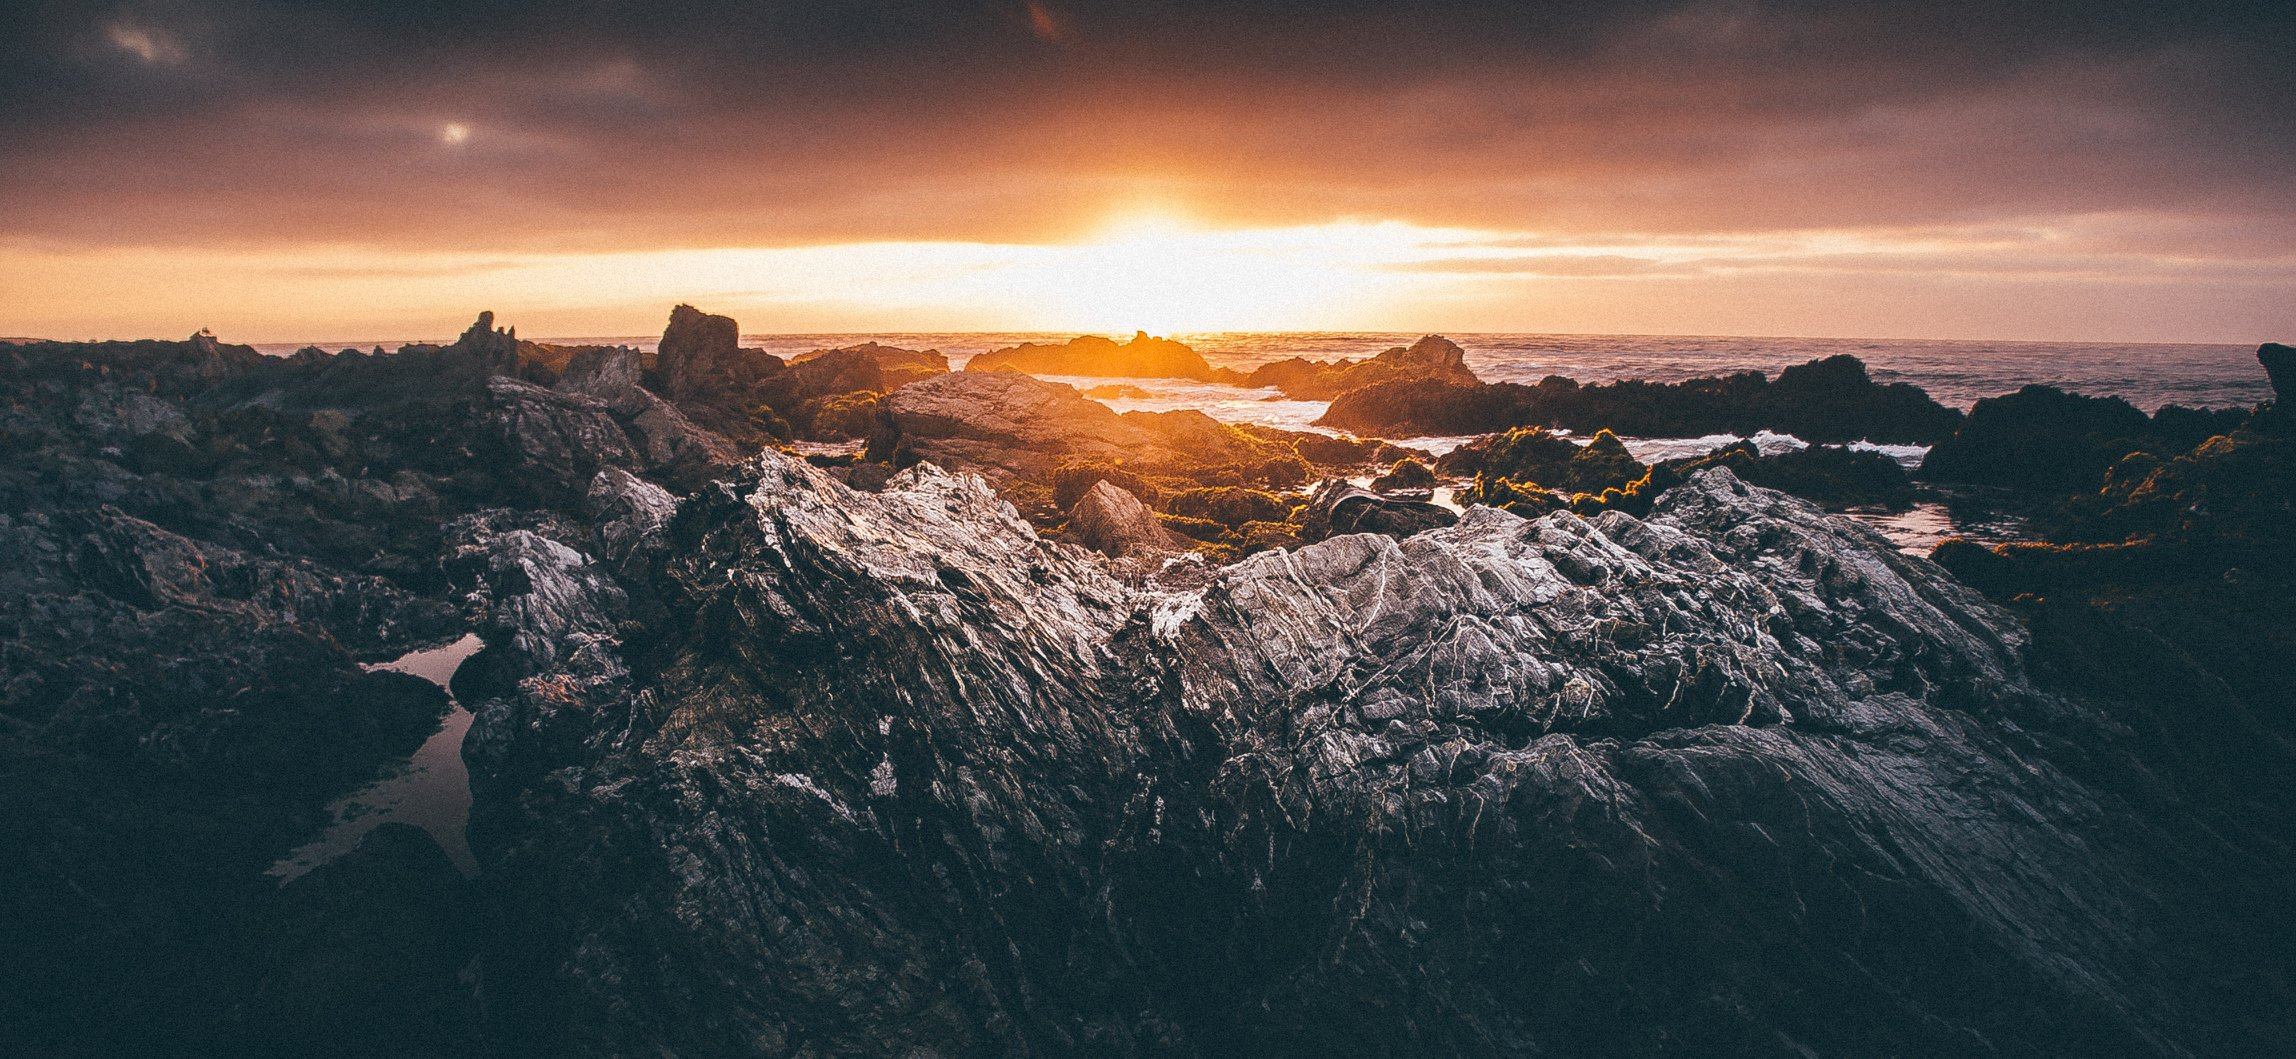 Фото Каменистый берег моря на фоне заката, by Wladimir Jara Salazar